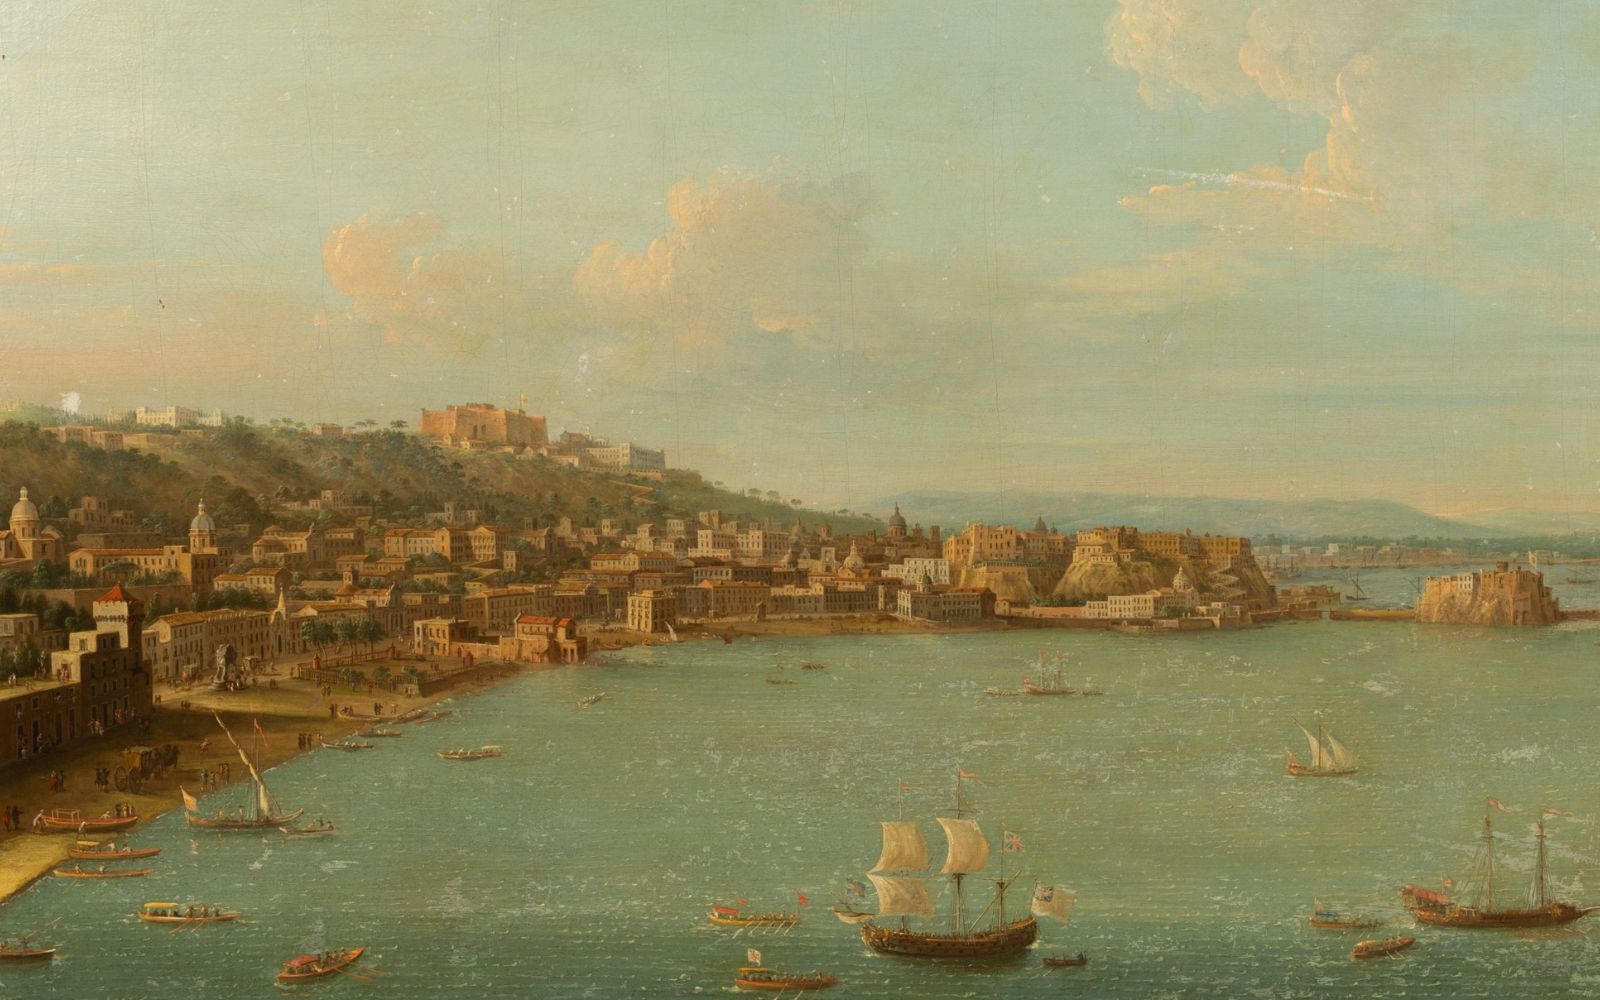 Antonio Joli (1700-1777)/A View of Naples from Mergellina/oil on canvas, 67.5cm x 97.8cm/